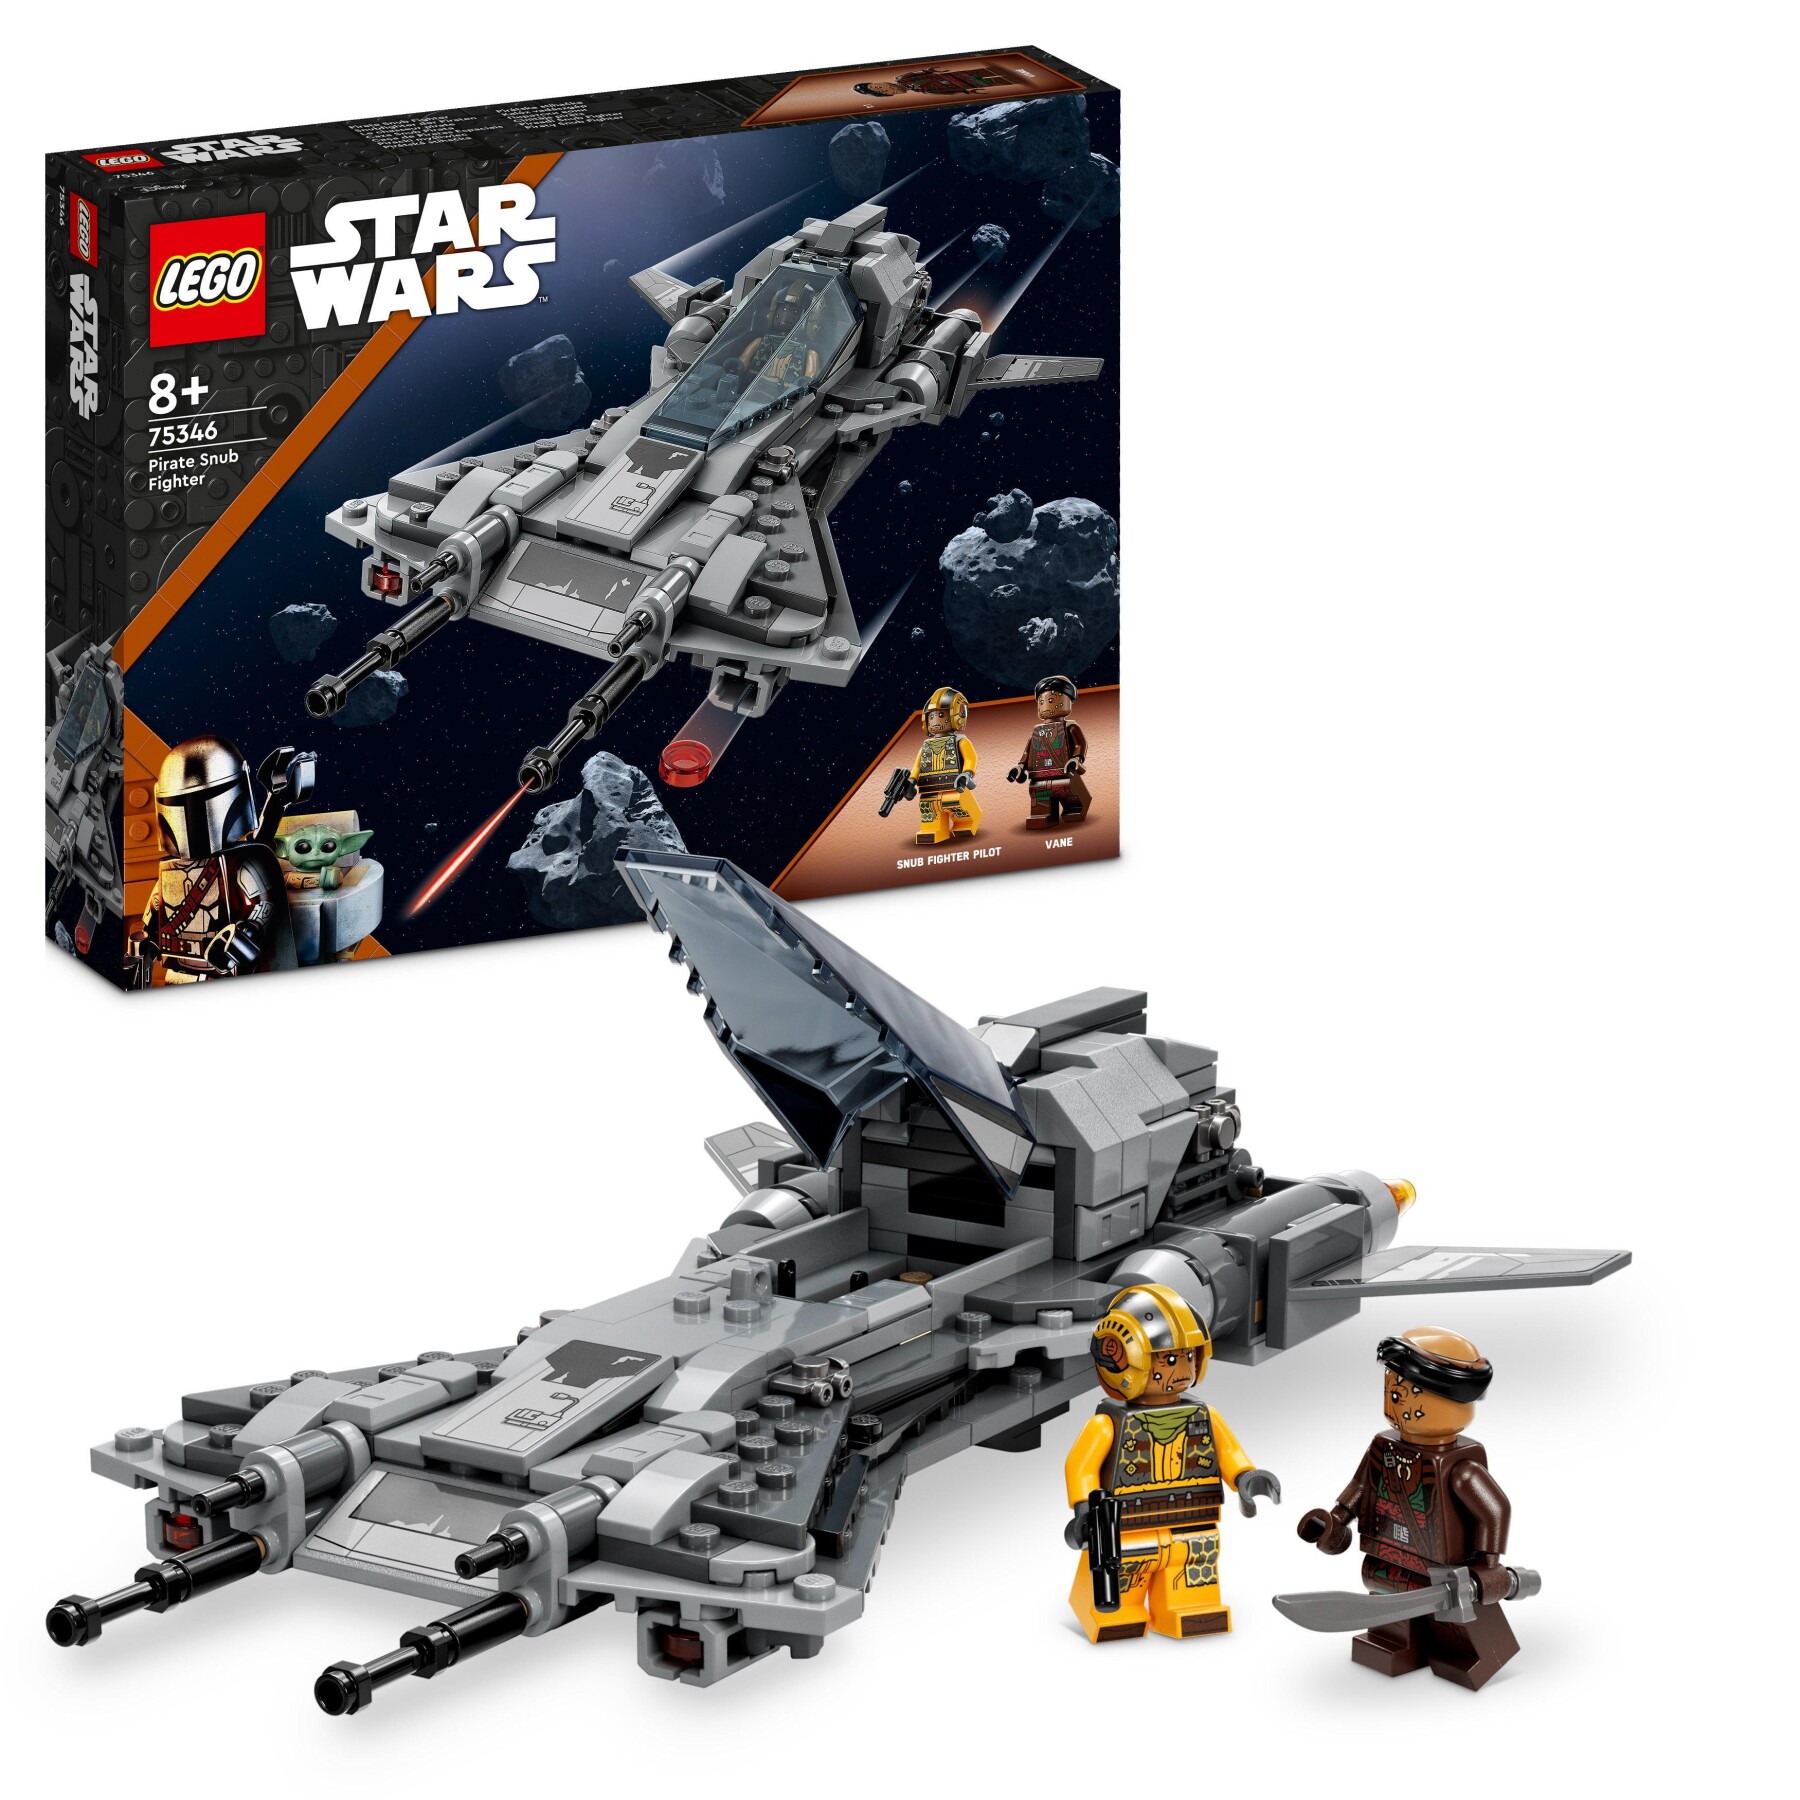 Lego star wars 75346 pirata snub fighter, set da the mandalorian stagione 3, modellino da costruire di starfighter giocattolo - 233, LEGO® Star Wars™